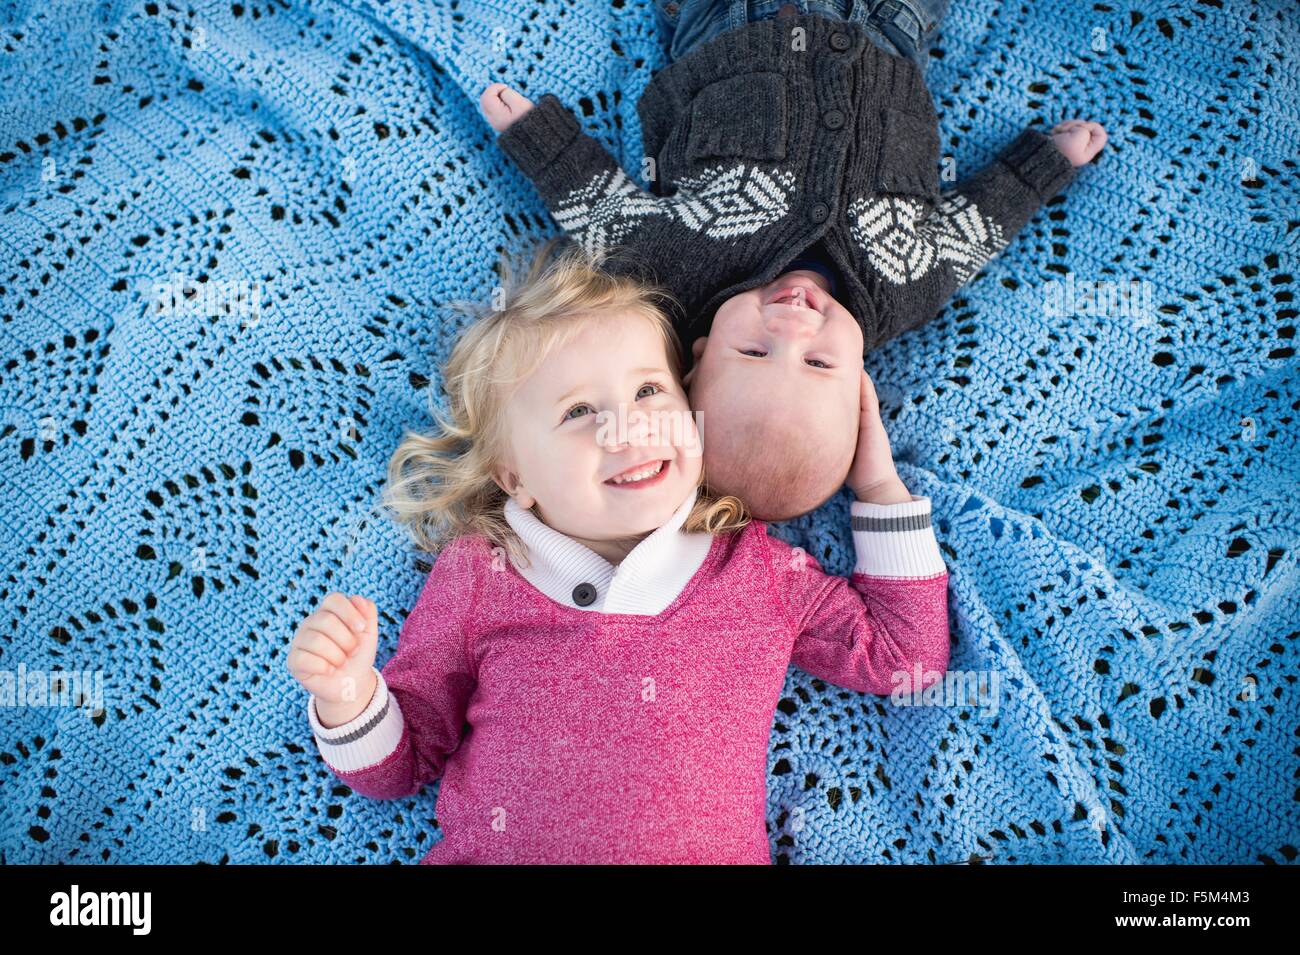 Obenliegende Porträt von Mädchen auf blauen Picknickdecke mit kleinen Bruder Stockfoto